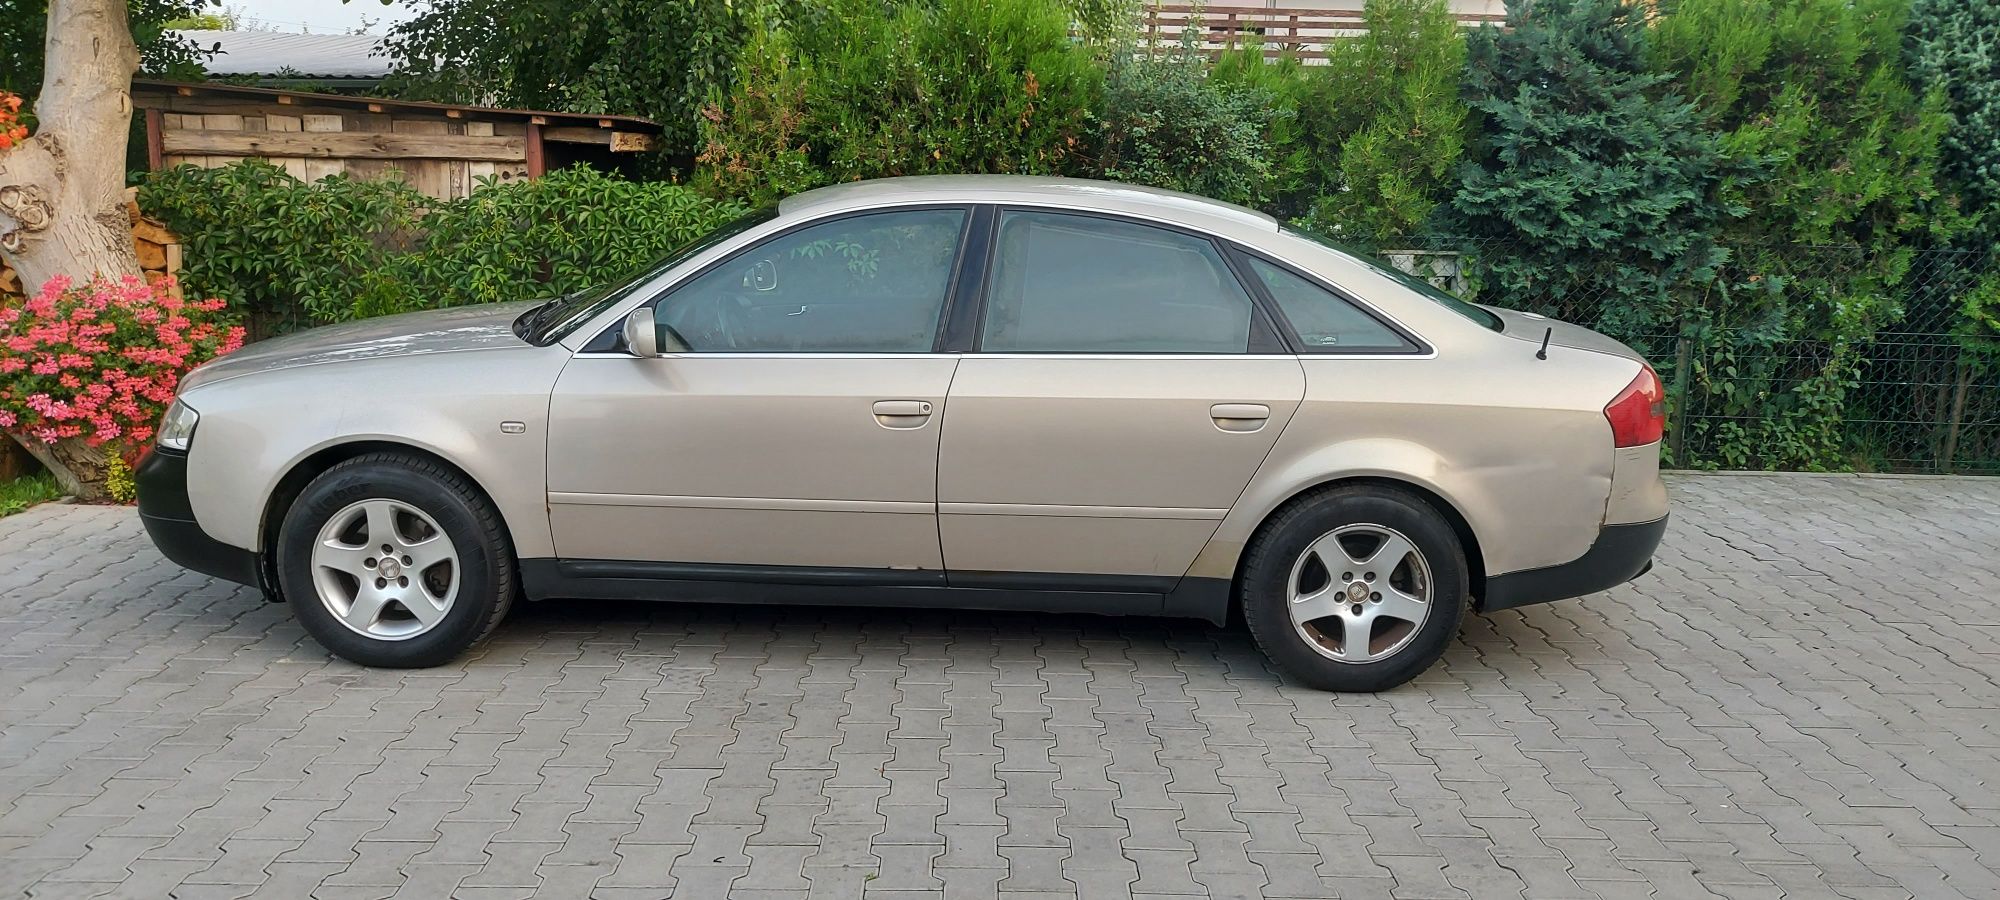 Audi a6 c5 quattro